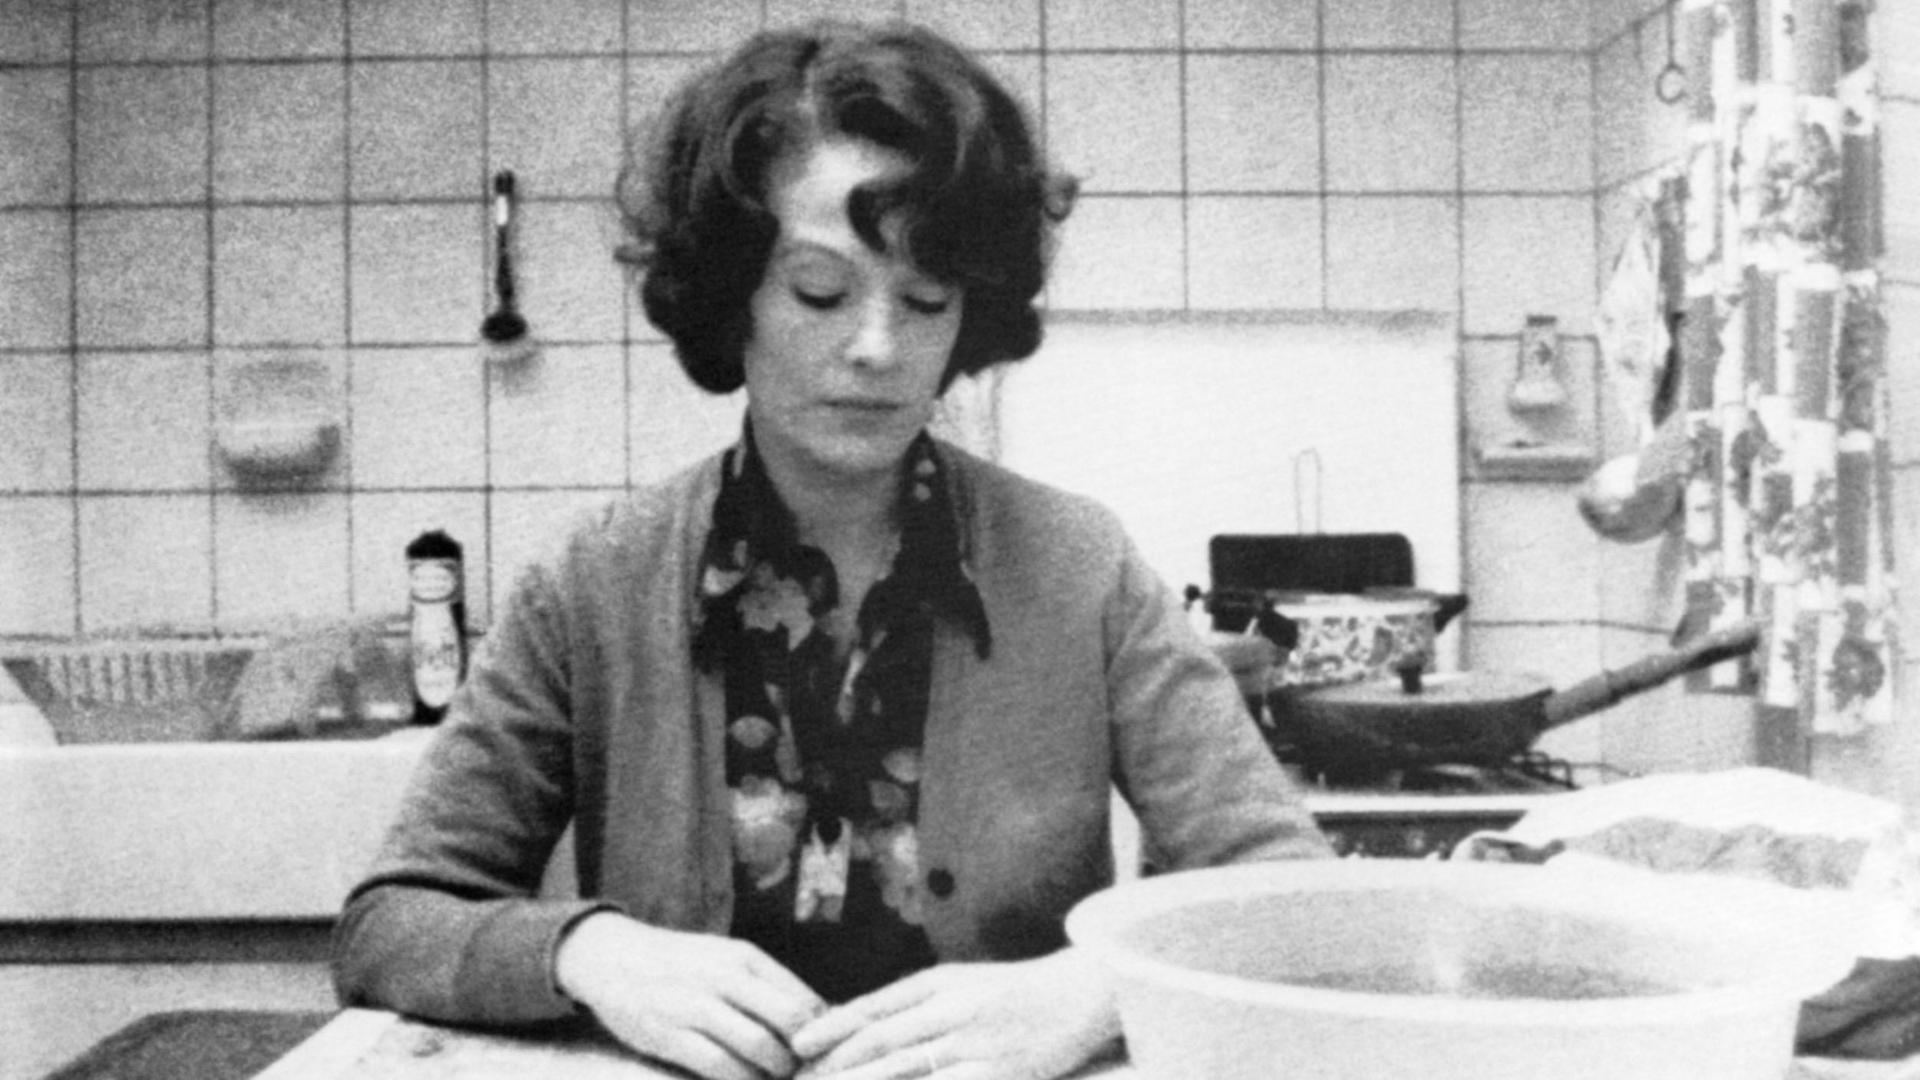 Auf dem Schwarz-Weiß-Bild sitzt eine Frau am Küchentisch. Vor ihr eine Schüssel mit Wasser und ein Sparschäler. Sie blickt nach unten, sie wirkt in sich gekehrt. 